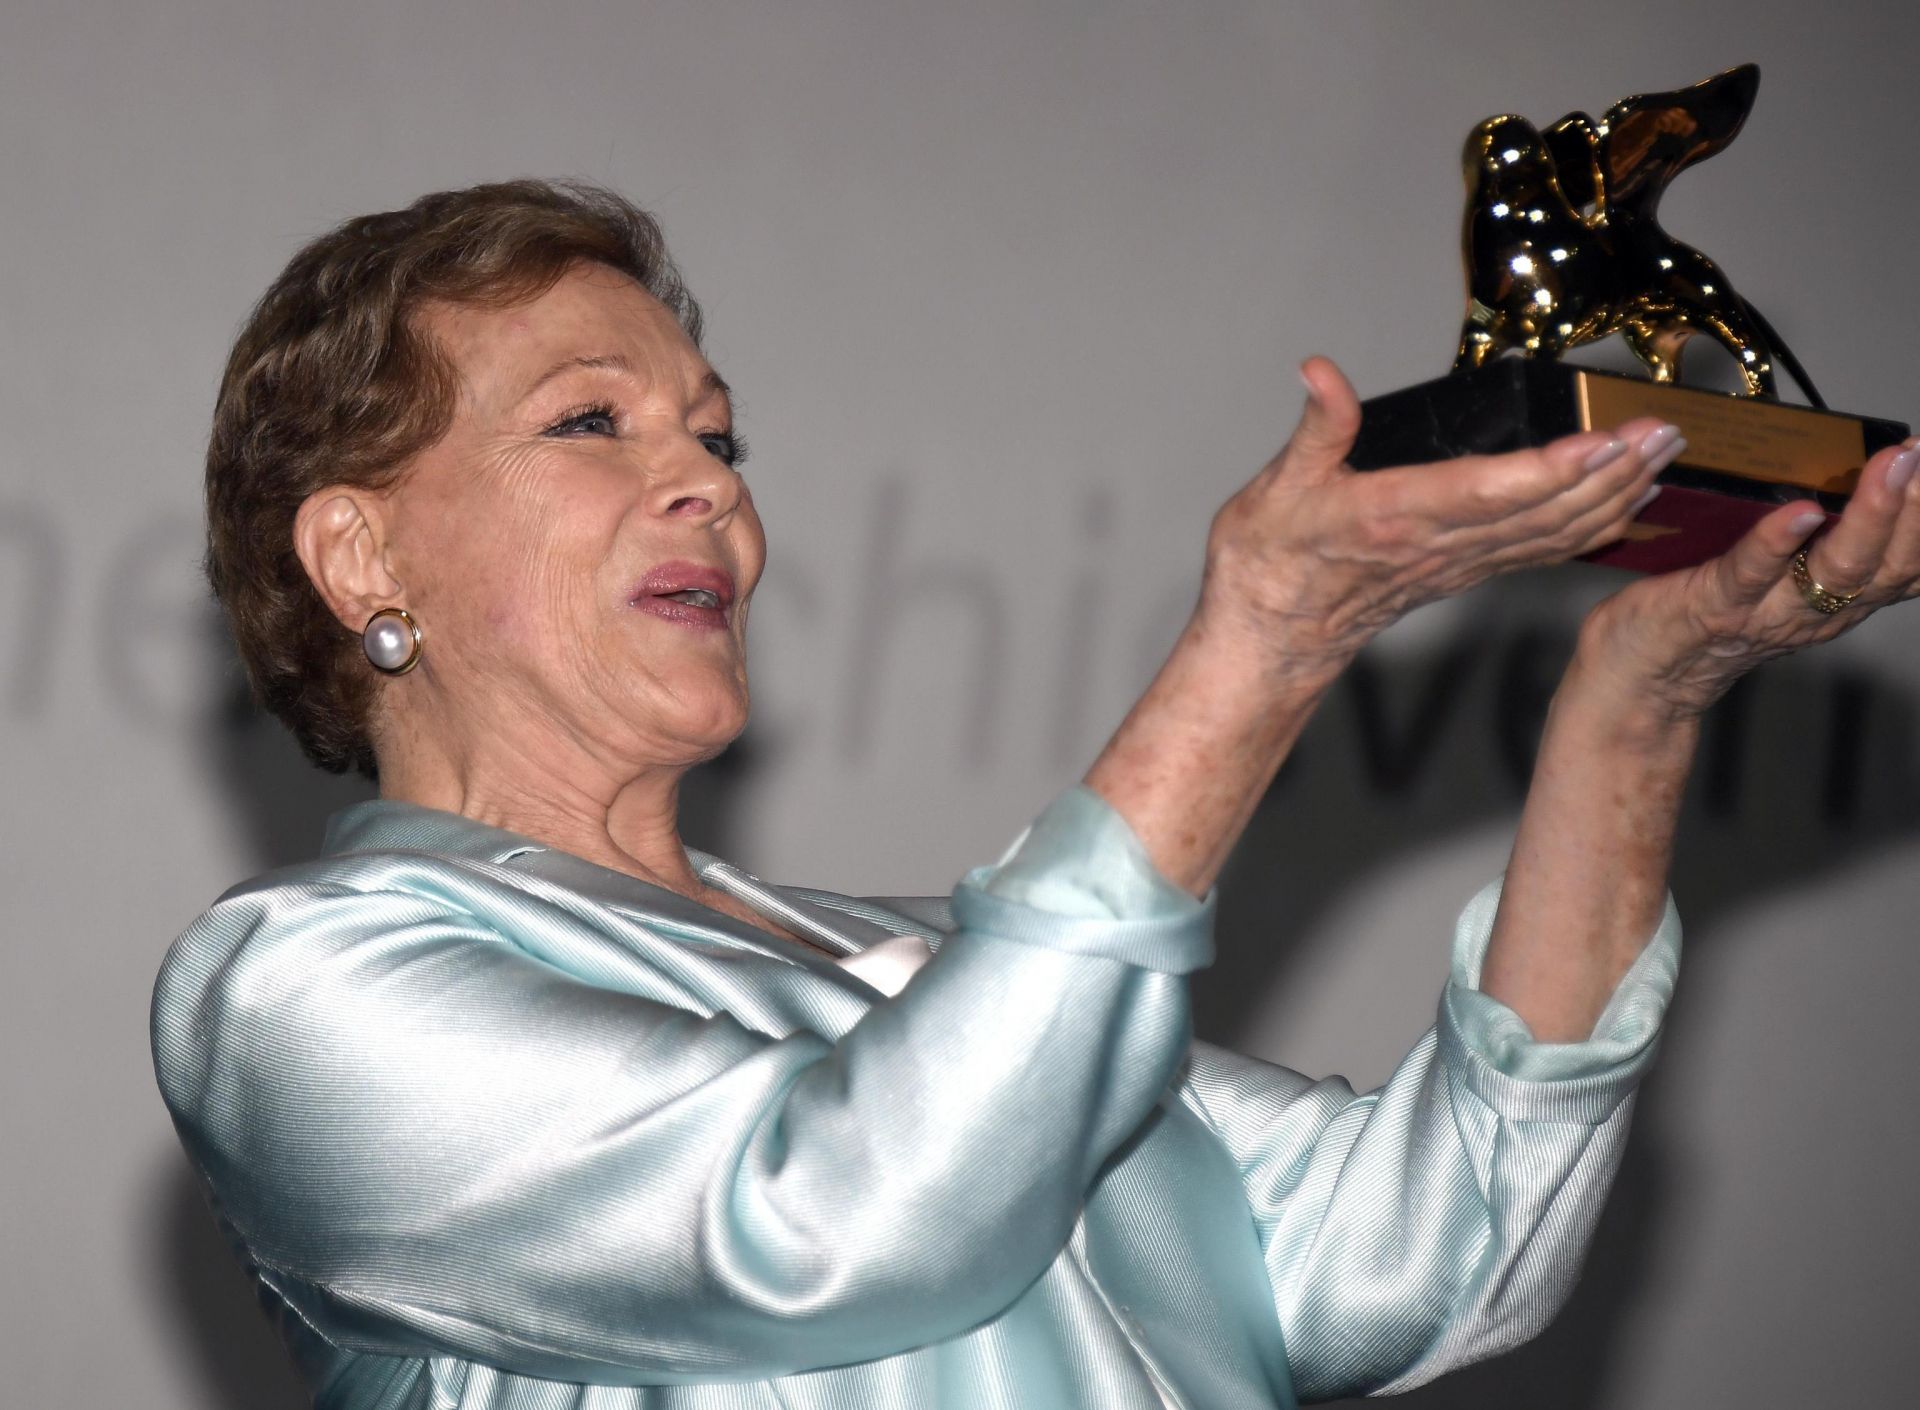 Джули Андрюс получава "Златен лъв" за цялостен принос на фестивала във Венеция